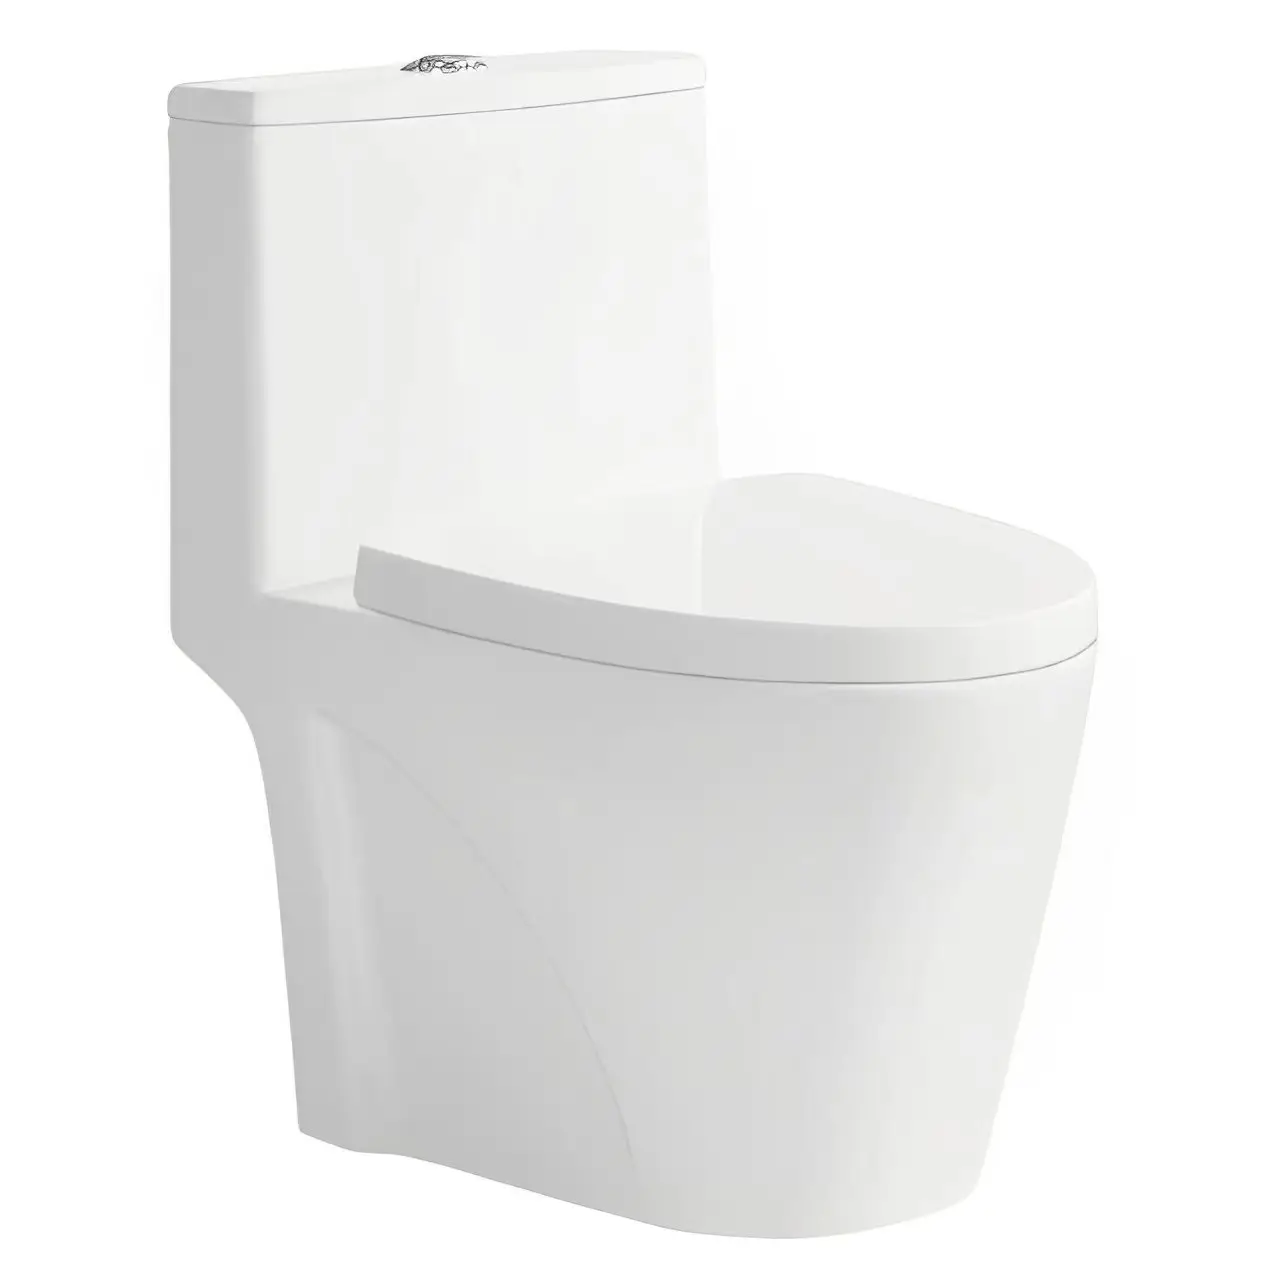 Medyag 2024 venda imperdível de louças sanitárias de cerâmica para banheiro, vaso sanitário de marca com descarga dupla, peça única montada no chão